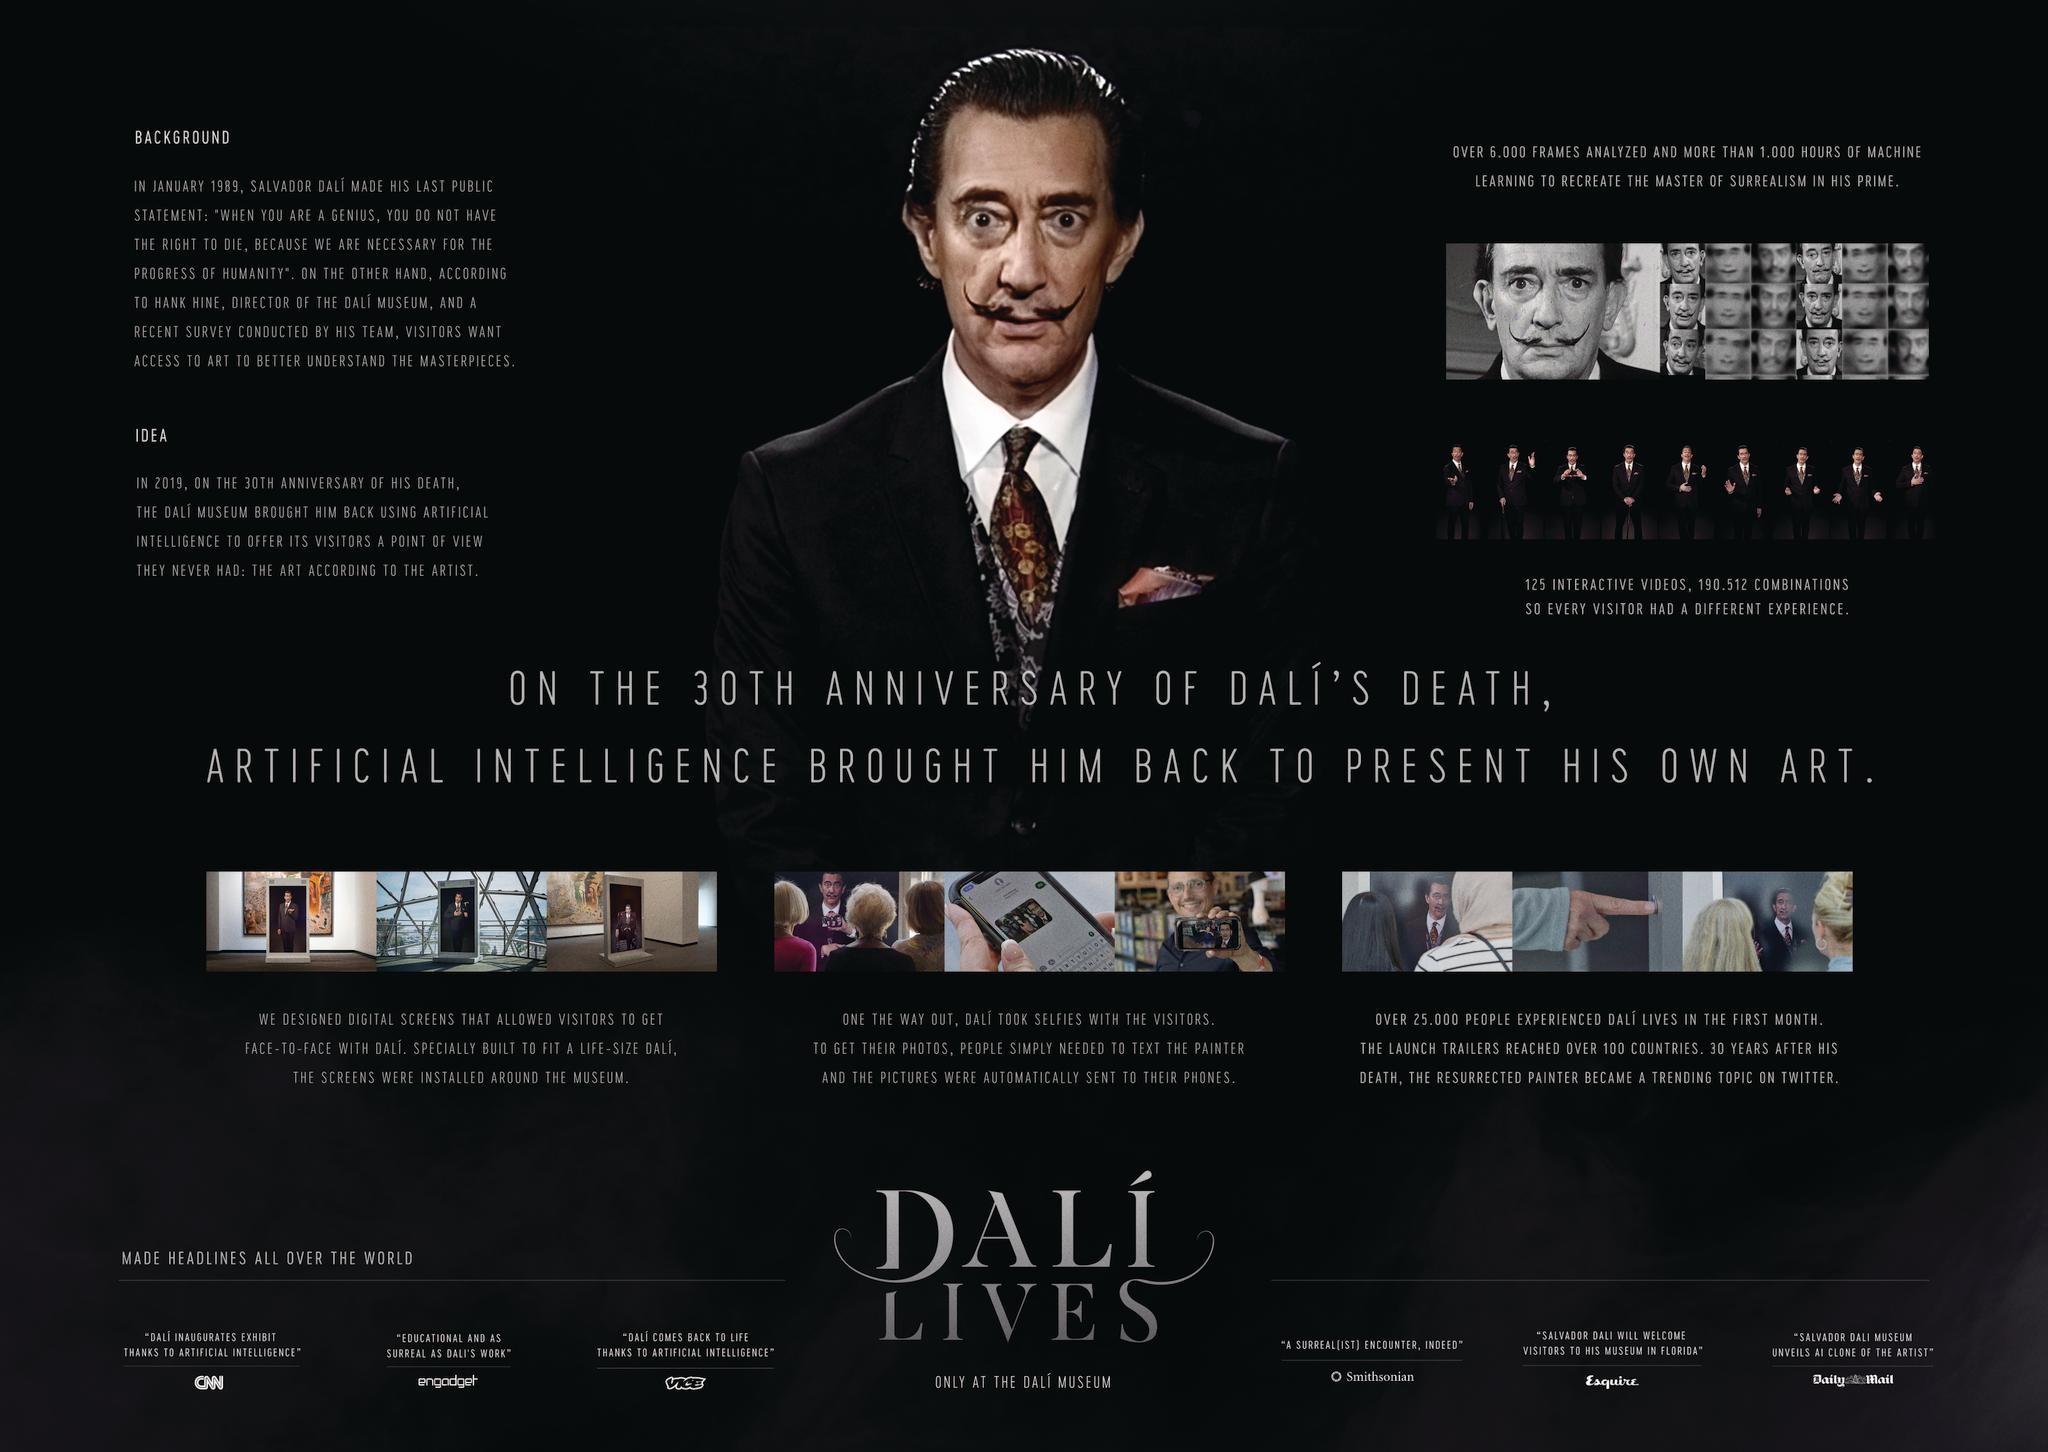 Dalí Lives